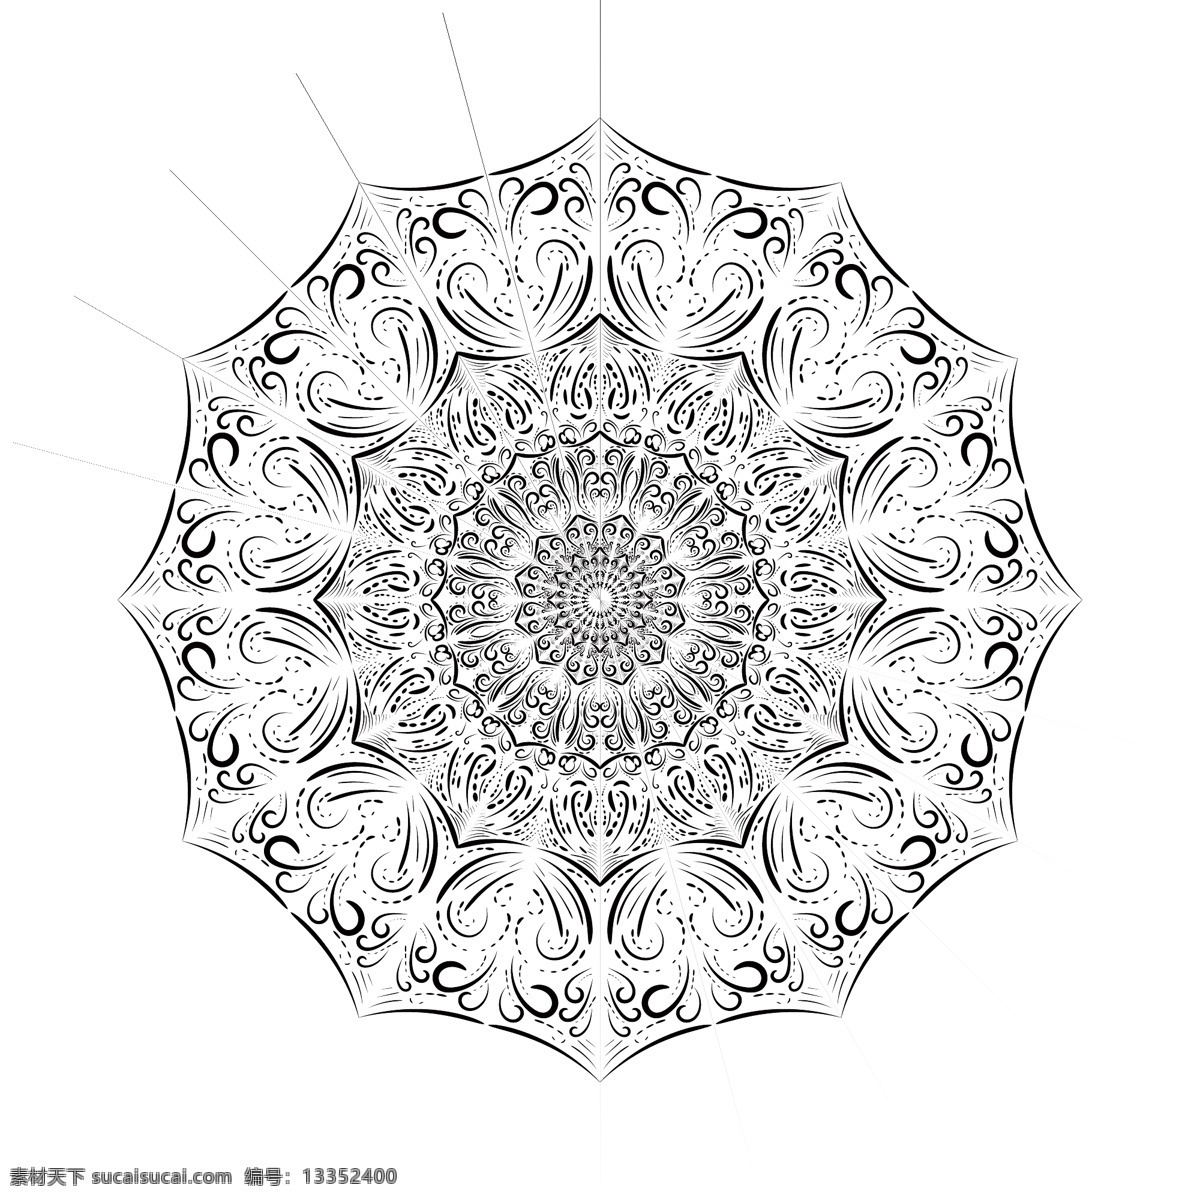 黑白 绘画 线条 形状 花 伞面 曼陀罗 桌面 元素 线条形状